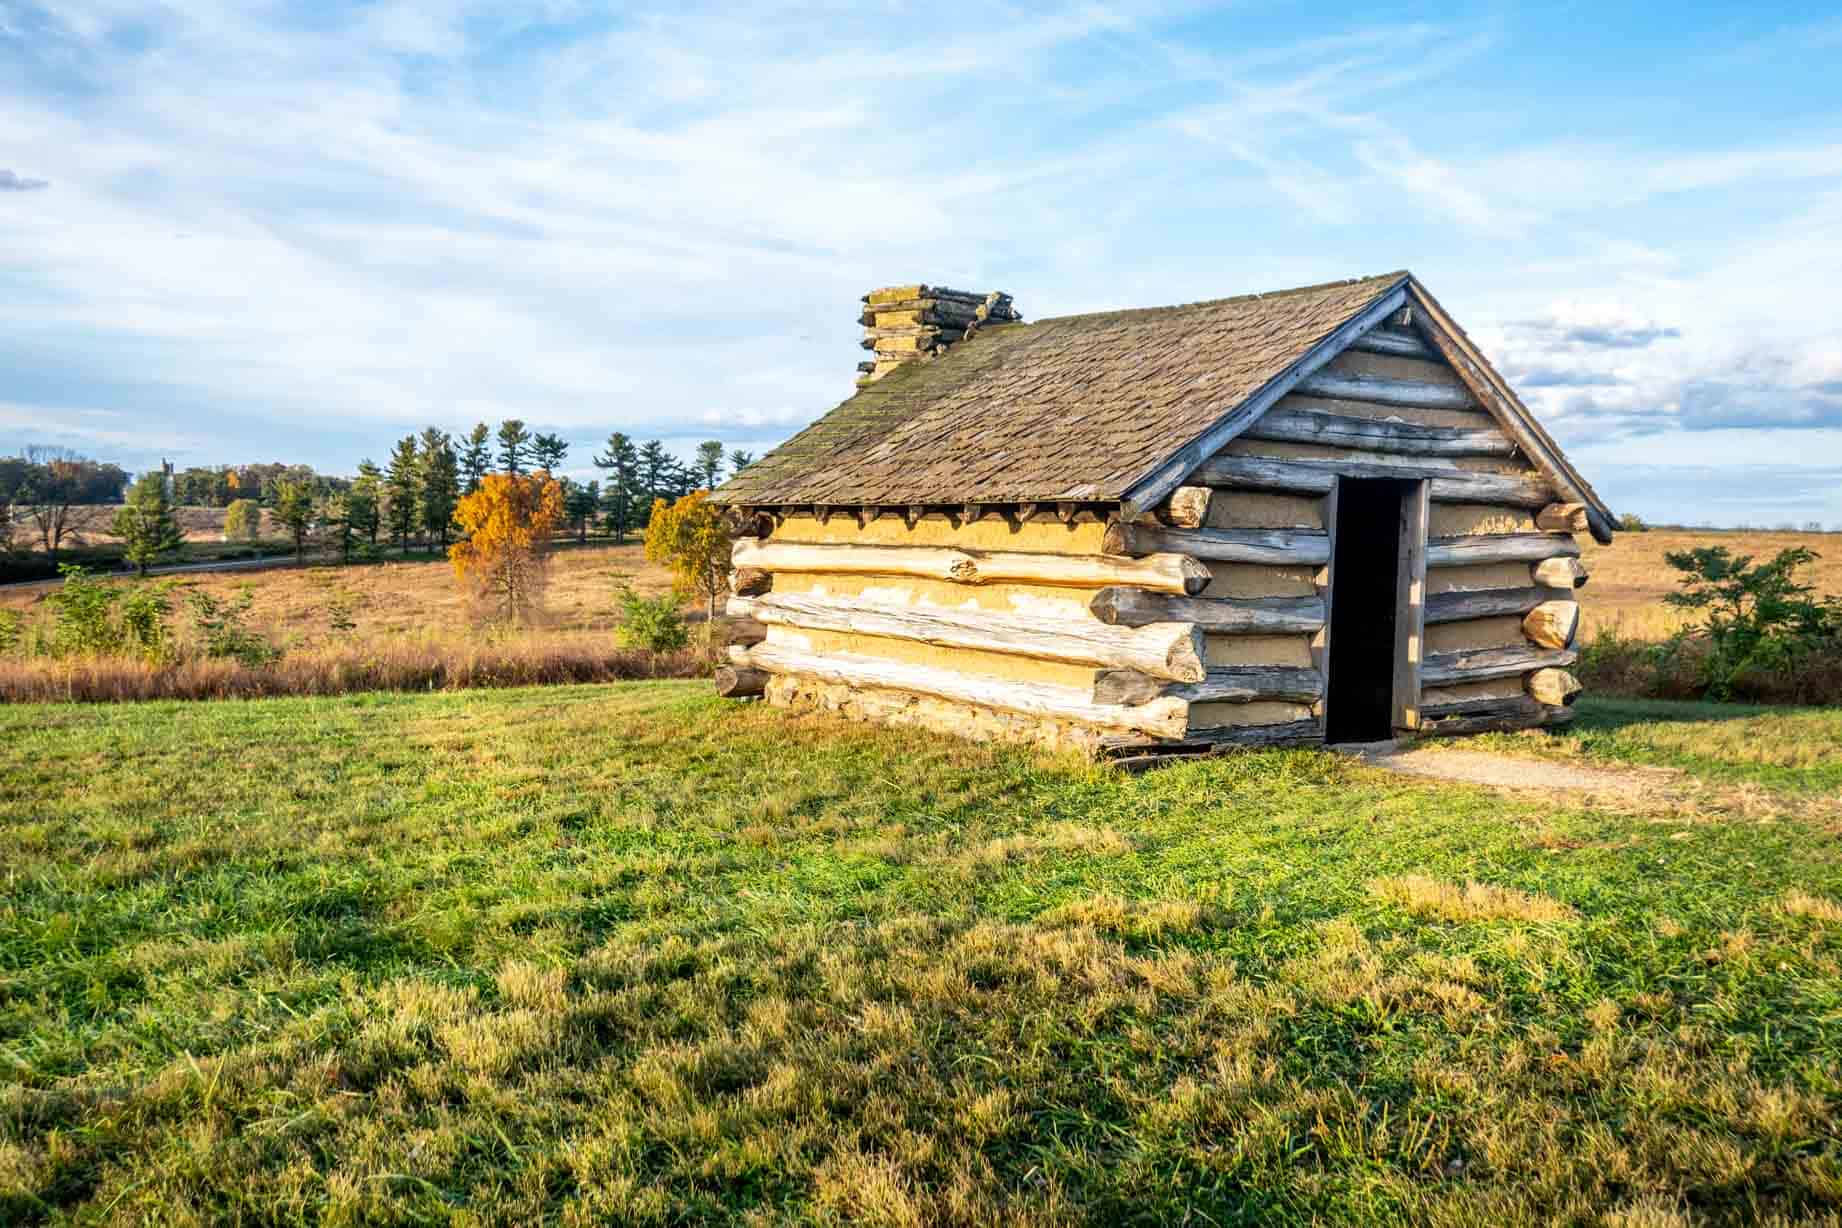 A long wood cabin in a field